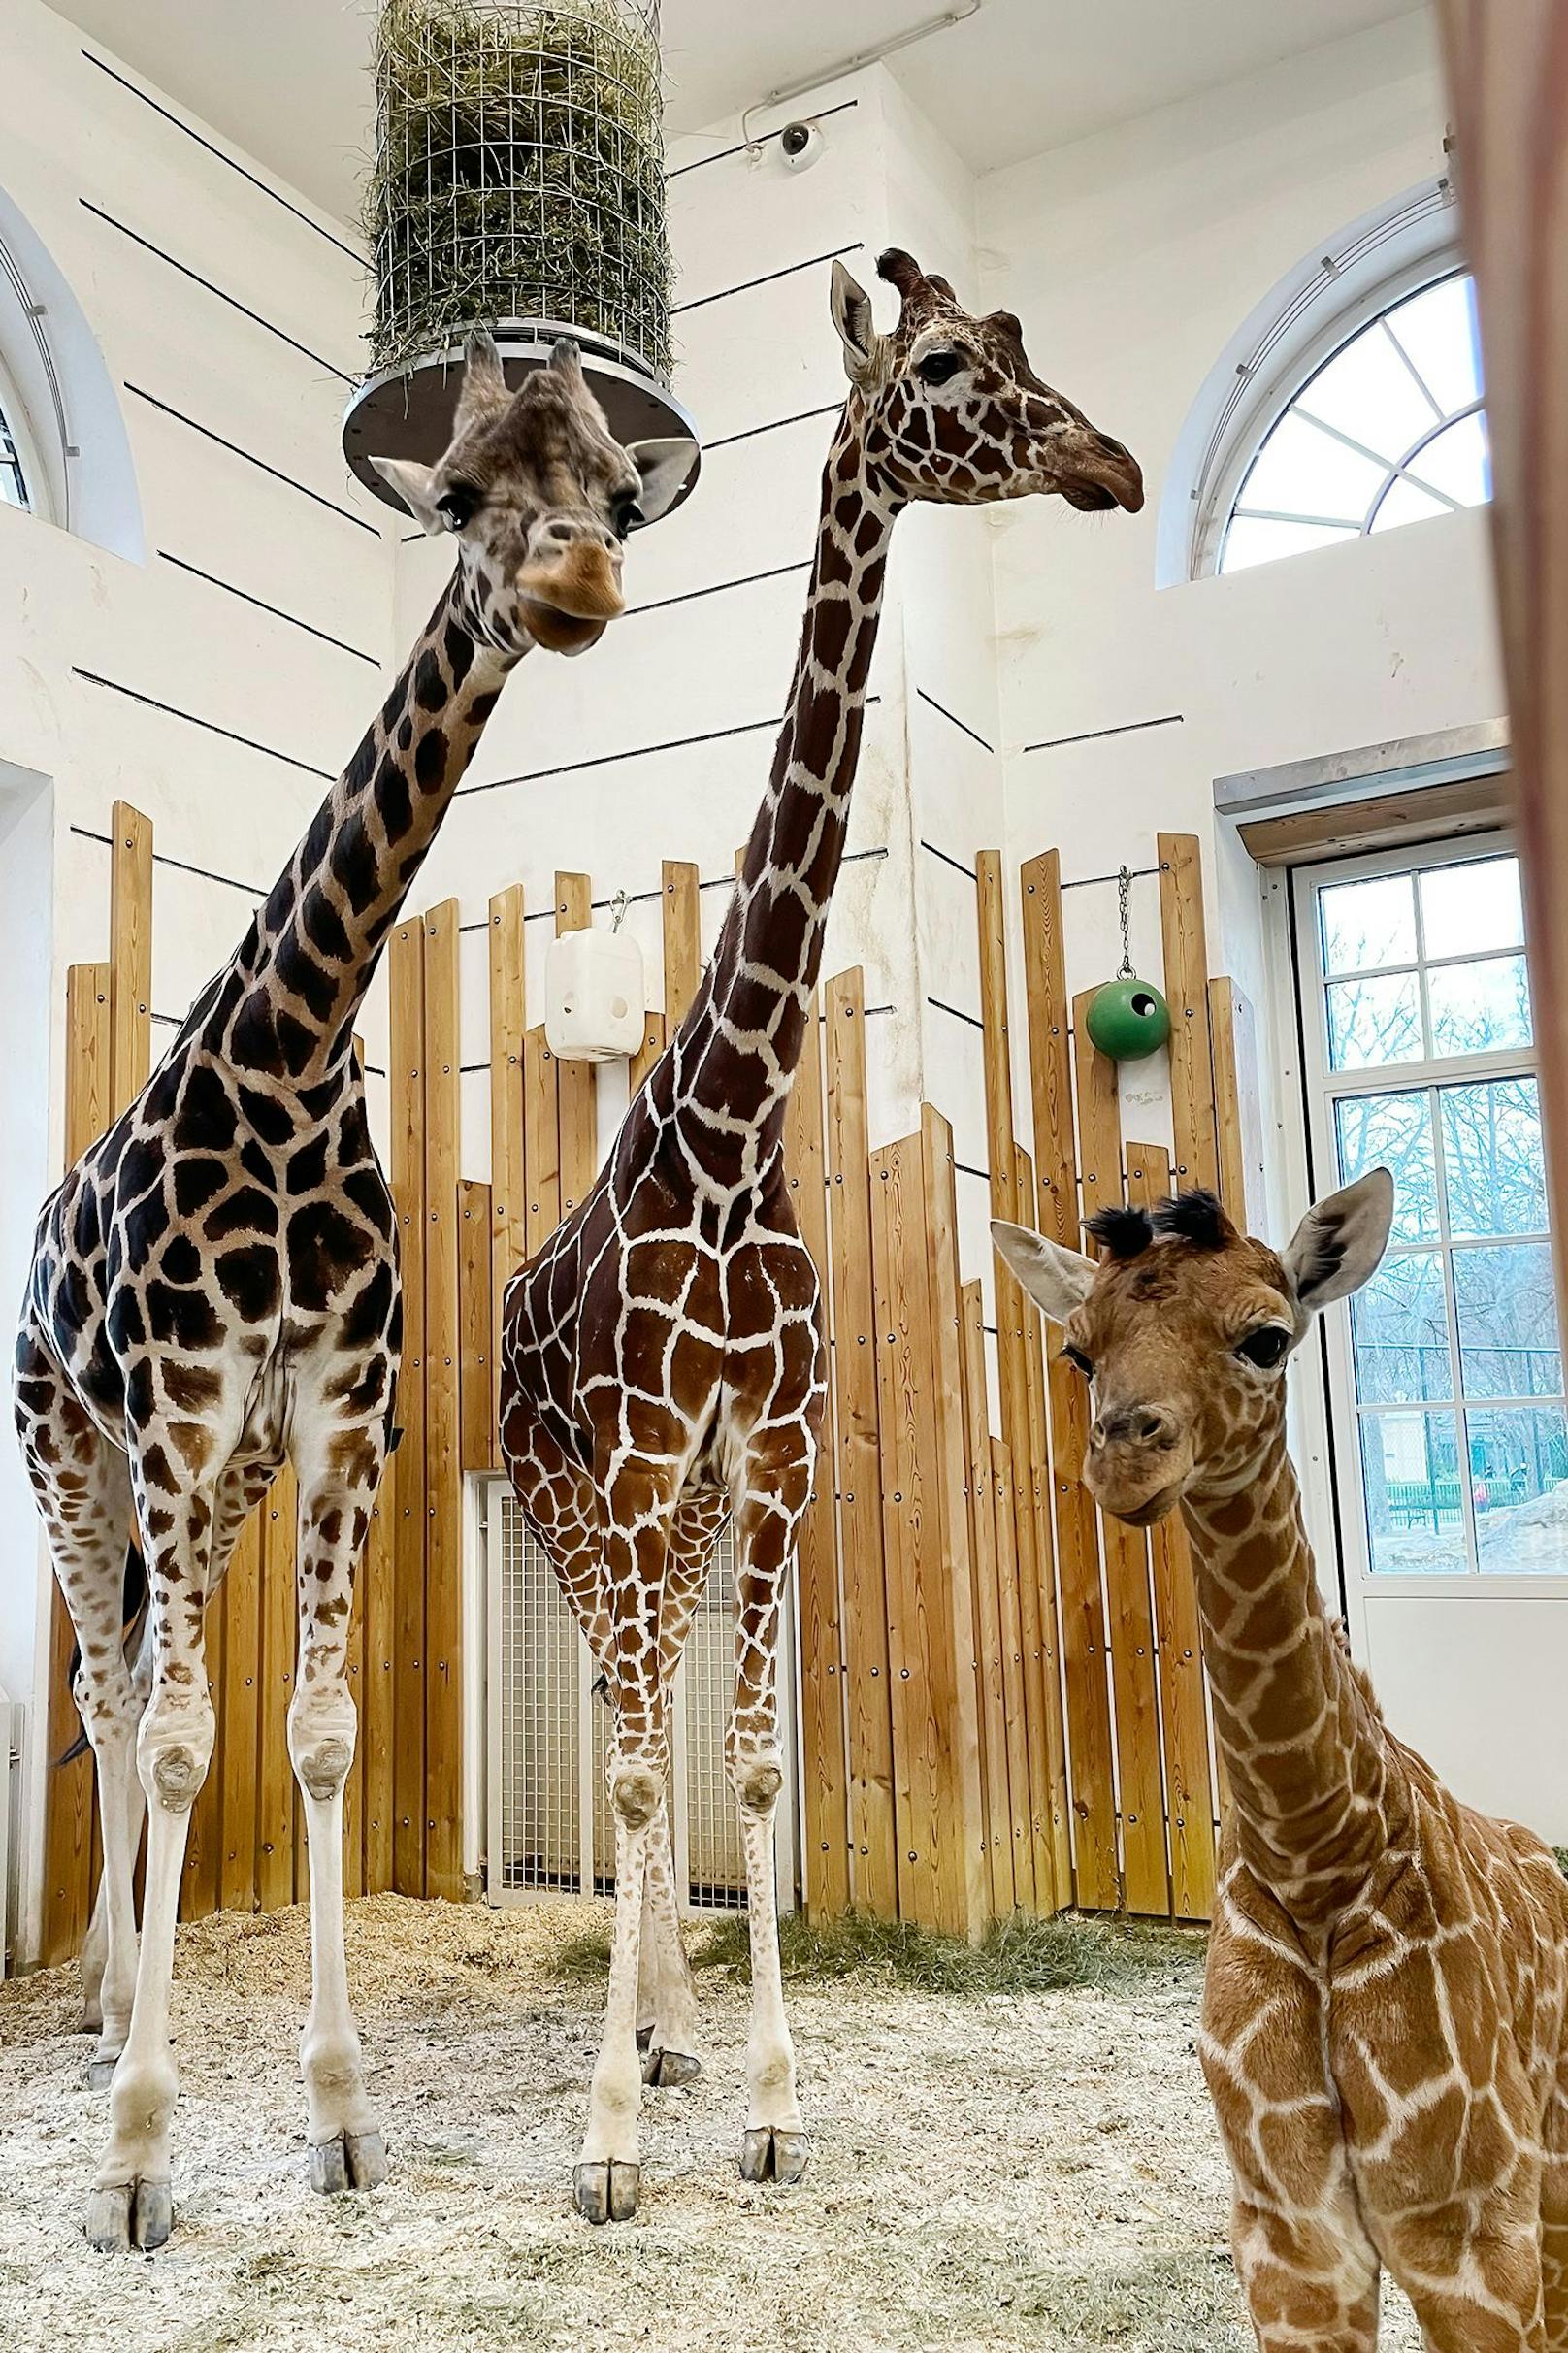 Das kleine Giraffen-Mädchen wiegt mittlerweile rund 50 Kilogramm und dreht schon immer häufiger neugierig Runden in der Anlage.